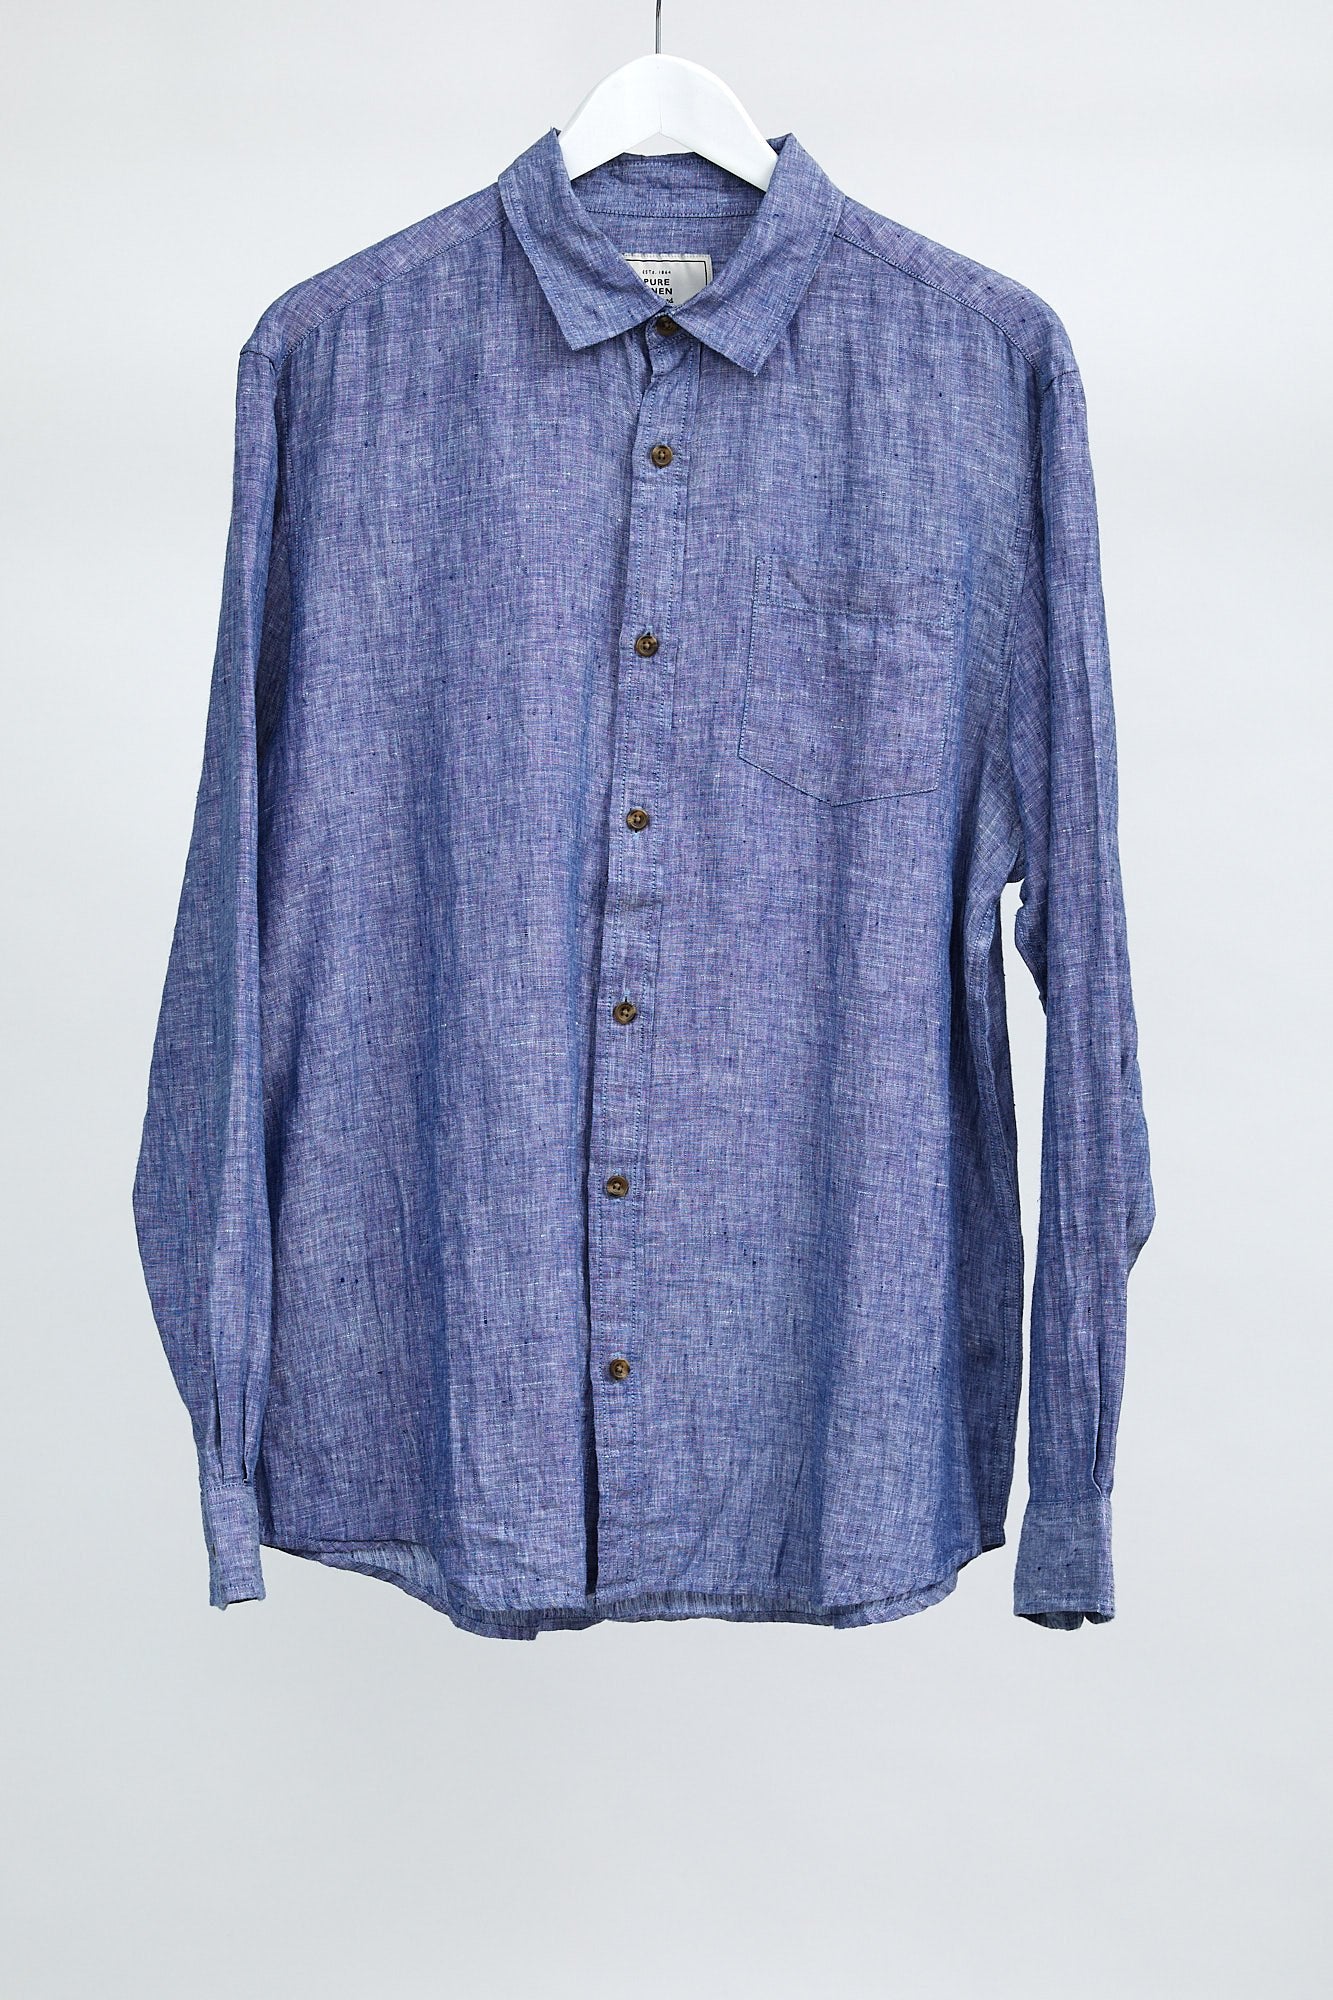 Mens John Lewis Blue Linen Shirt: Size Medium